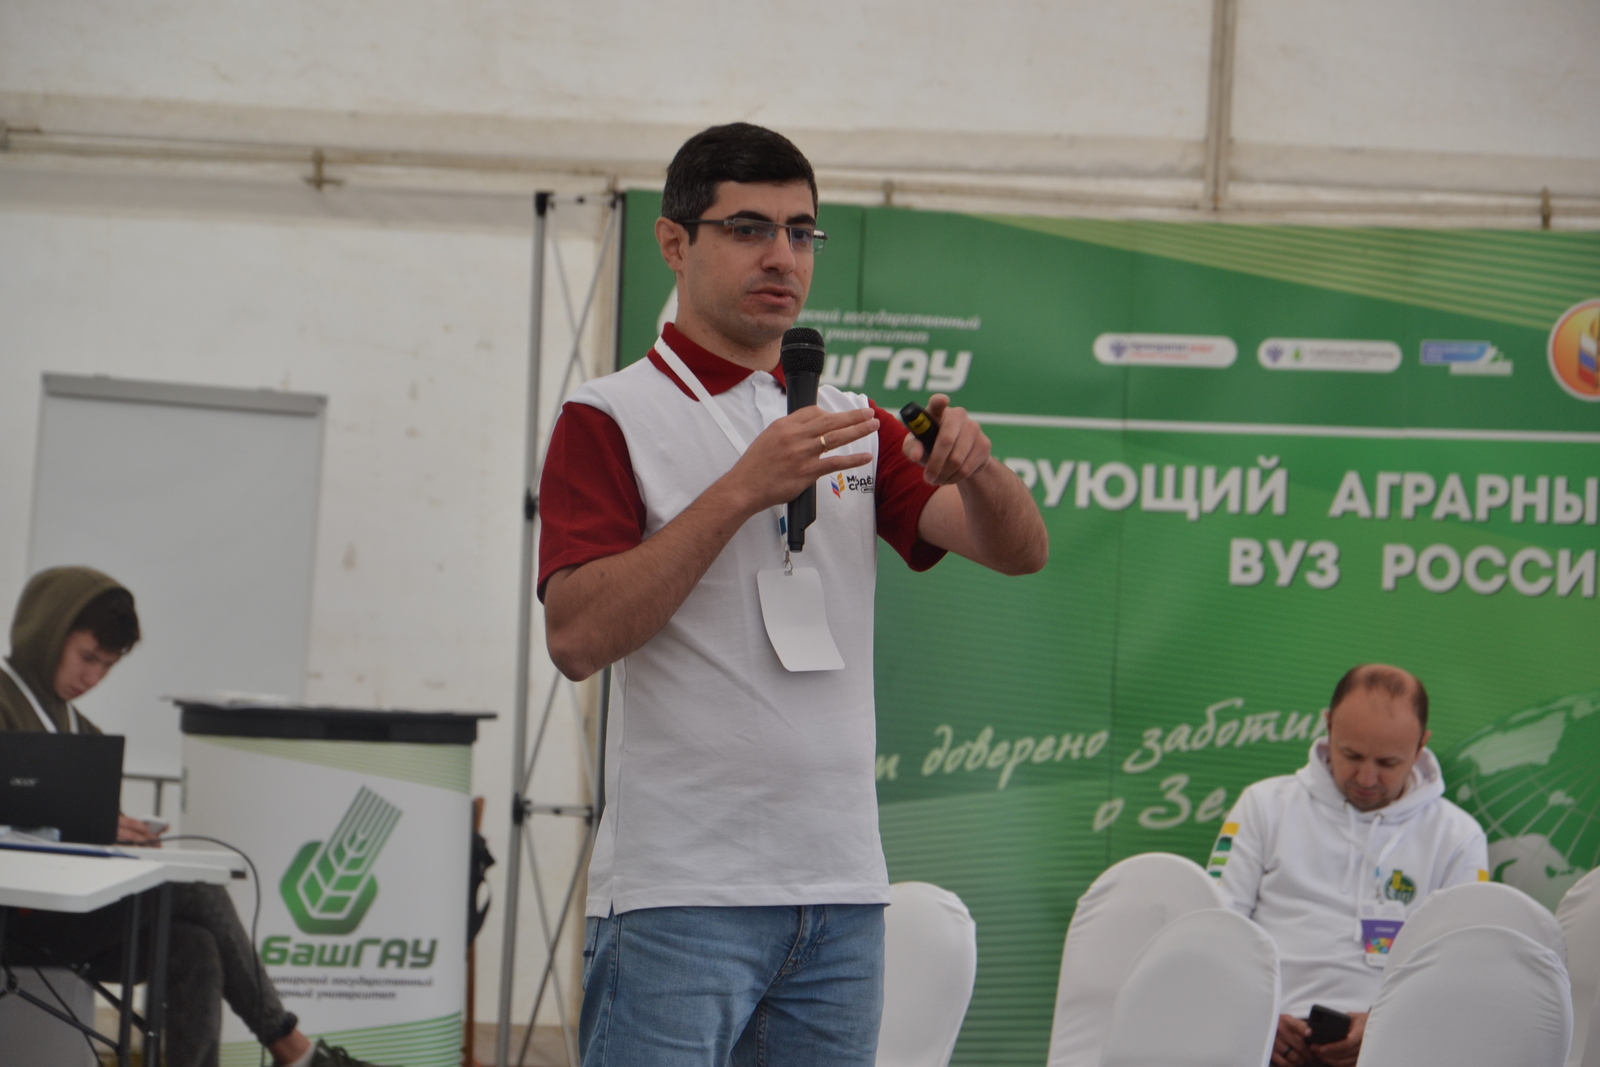 На форуме в Бурзянском районе районе Башкирии обсуждали, как привлечь молодежь в село